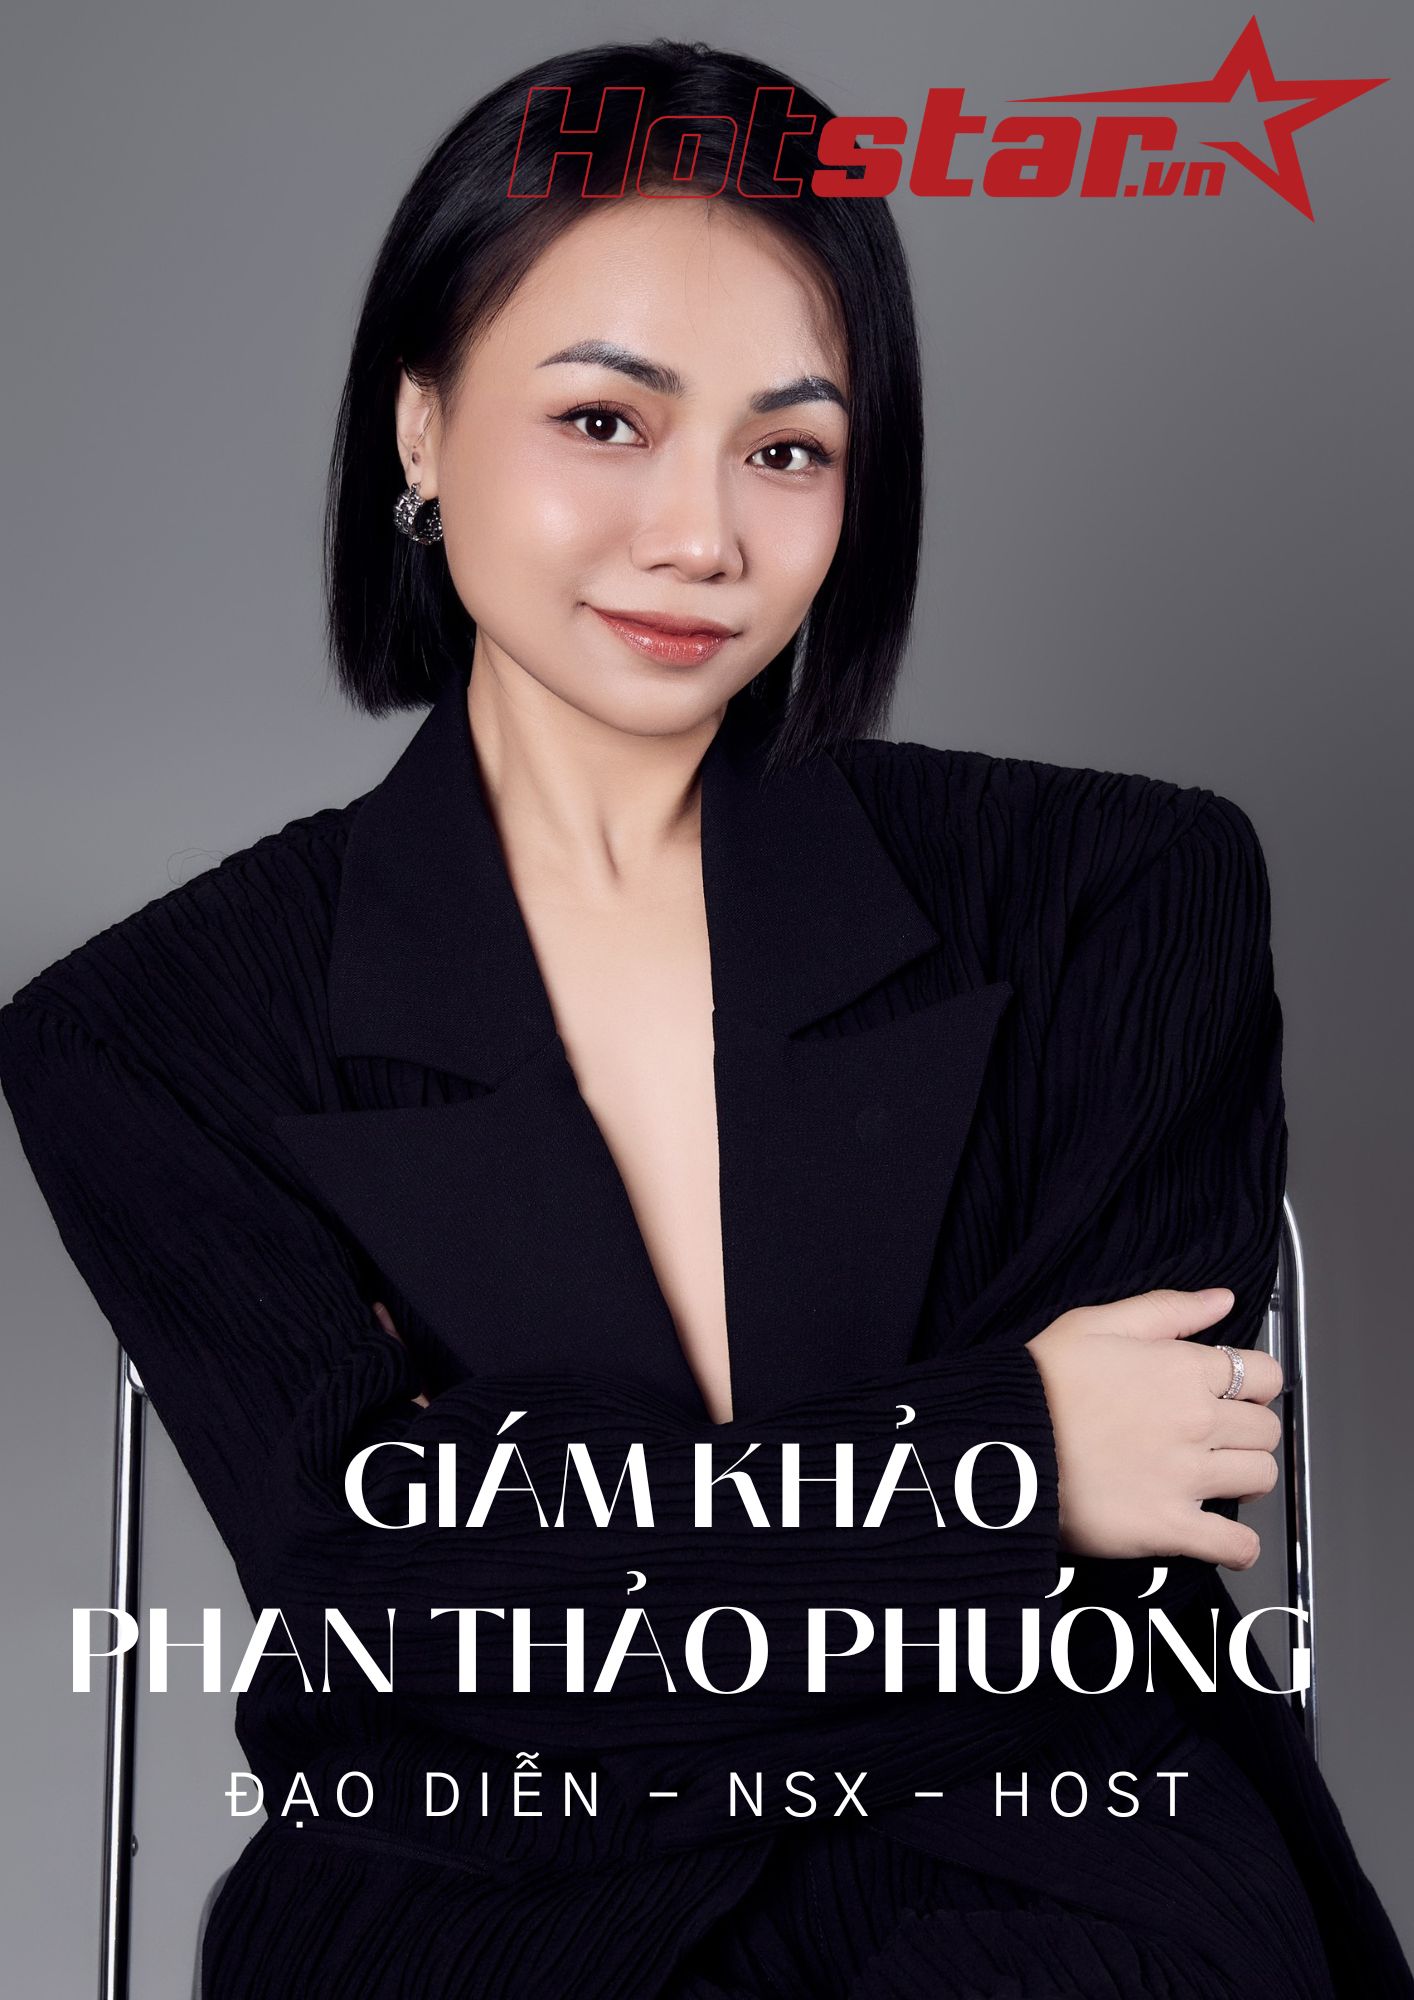 Giám khảo Phan Thảo Phương hiện đang là Đạo diễn, Giám đốc sản xuất, Influencer, Diễn giả, đồng thời còn là Host của nhiều chương trình nổi tiếng.